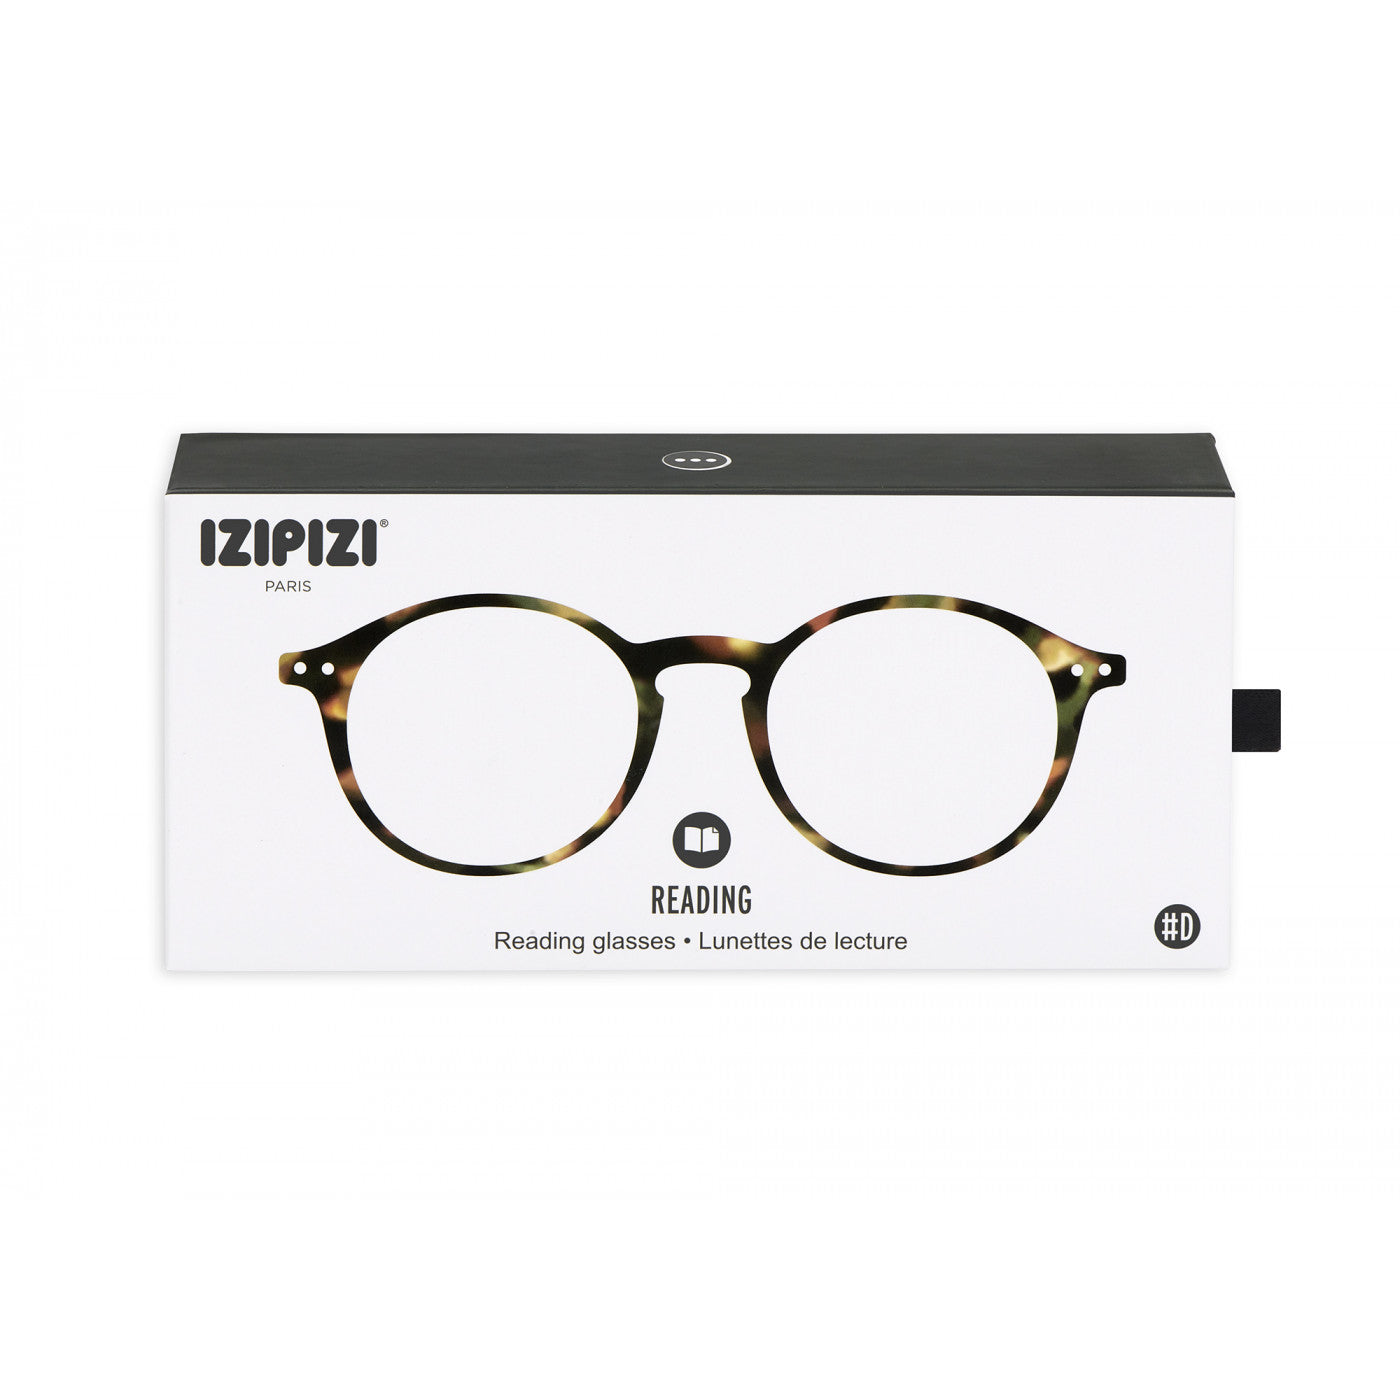 Unisex Reading Glasses - Style D - Tortoise 1.5